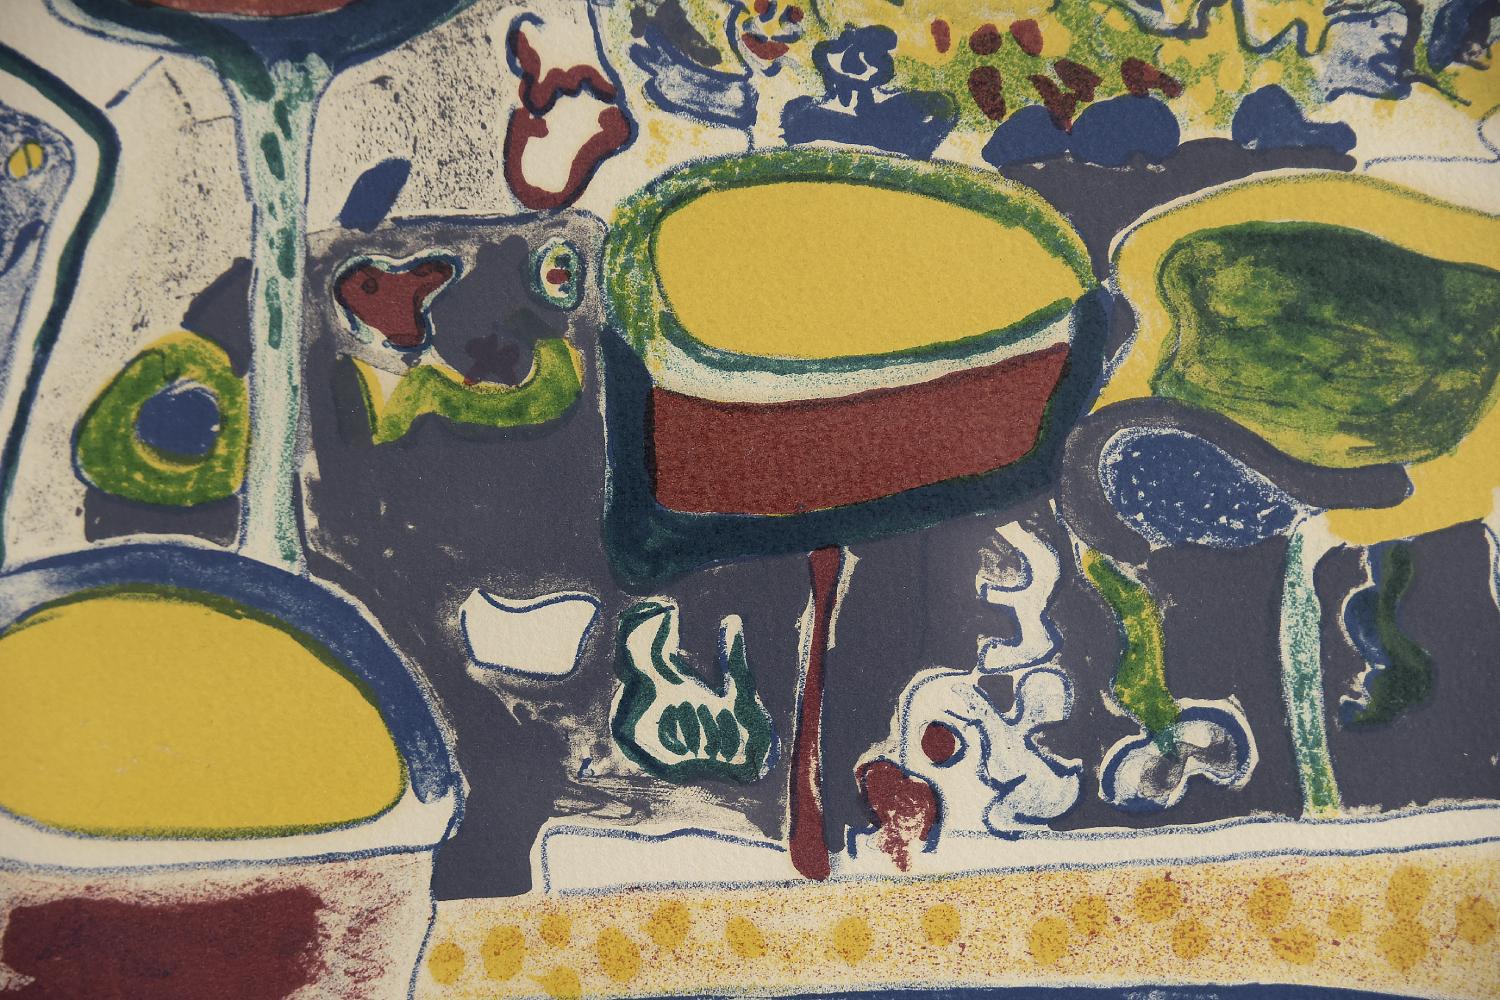 Anders Fogelin, Komposition, 1974
Lithographie en couleurs
Numéro 97/200
Œuvre avec signature de l'artiste, titre et numéro individuel (au crayon)
Dimensions de travail 61/69
L'œuvre est encadrée

Anders Fogelin est né en 1933 et est décédé